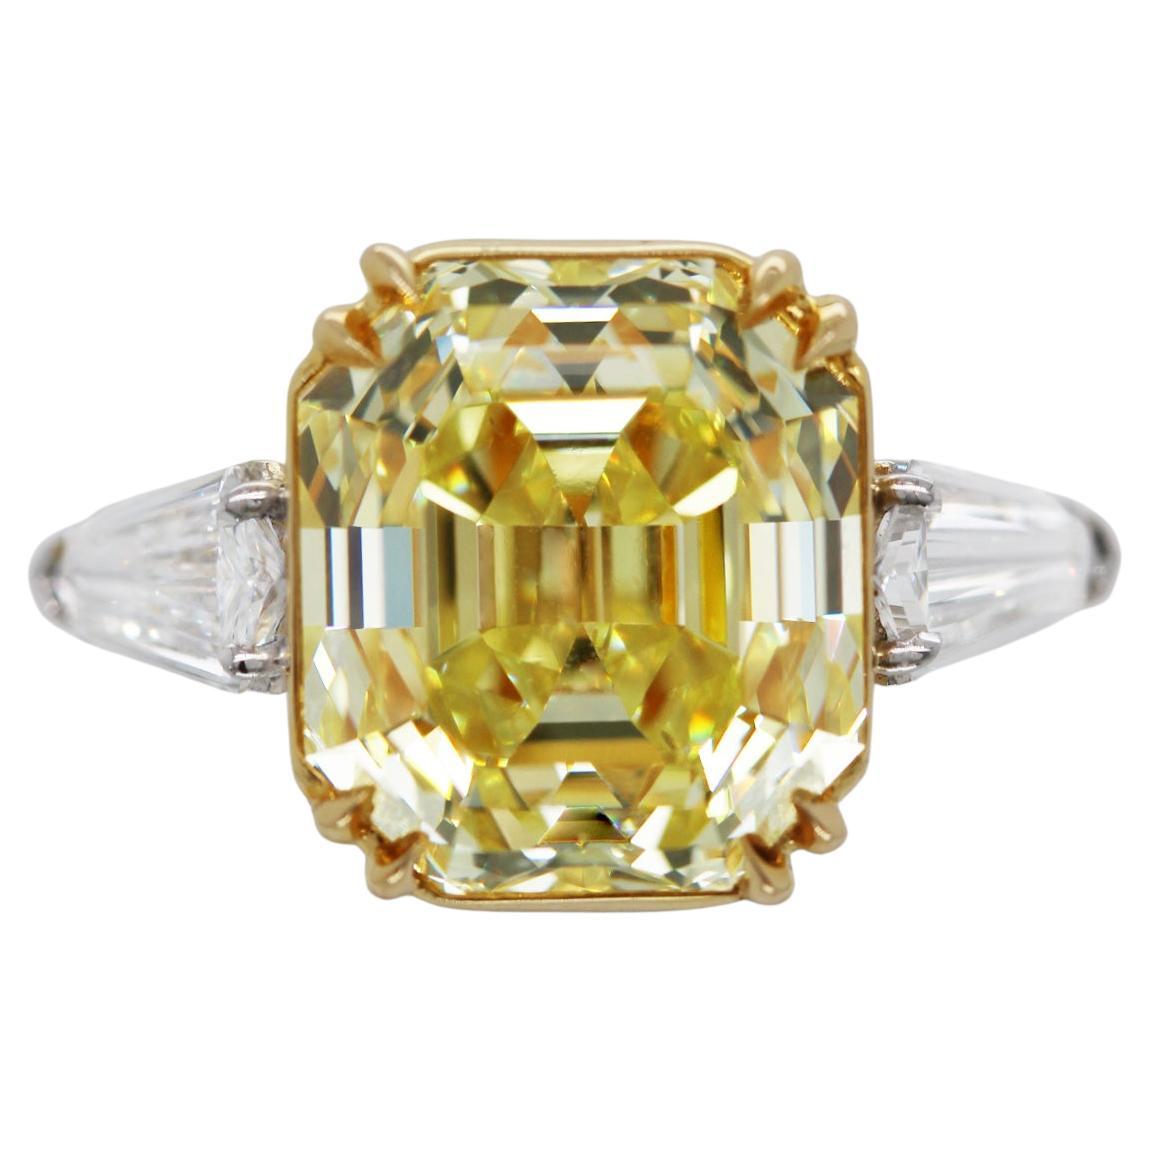 Ein eleganter Verlobungsring aus 11,71 Karat Fancy Intense Yellow mit Diamanten im Smaragdschliff und weißen Steinen im Kugelschliff (TCW 1,15), gefasst in 18 Karat Gelbgold und Platin. Der rechteckige Mittelstein im Smaragdschliff ist ein